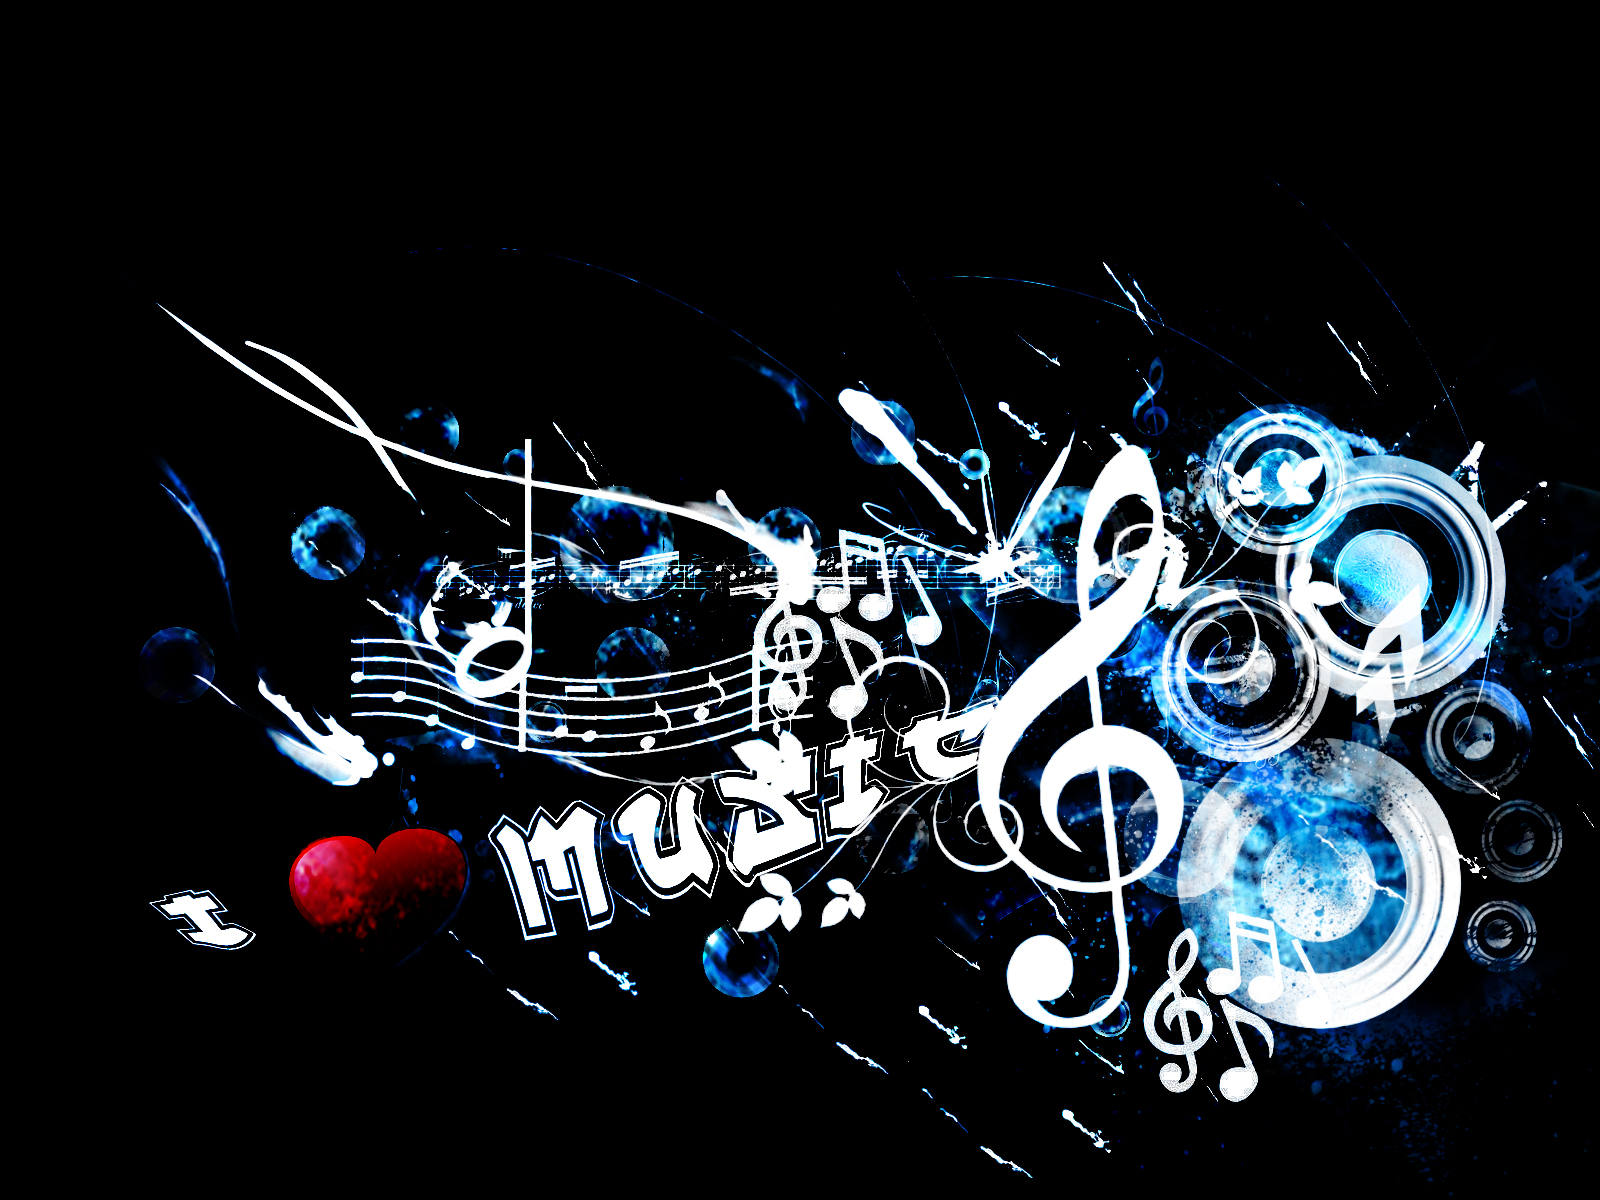 75+] Music Wallpaper Images - WallpaperSafari